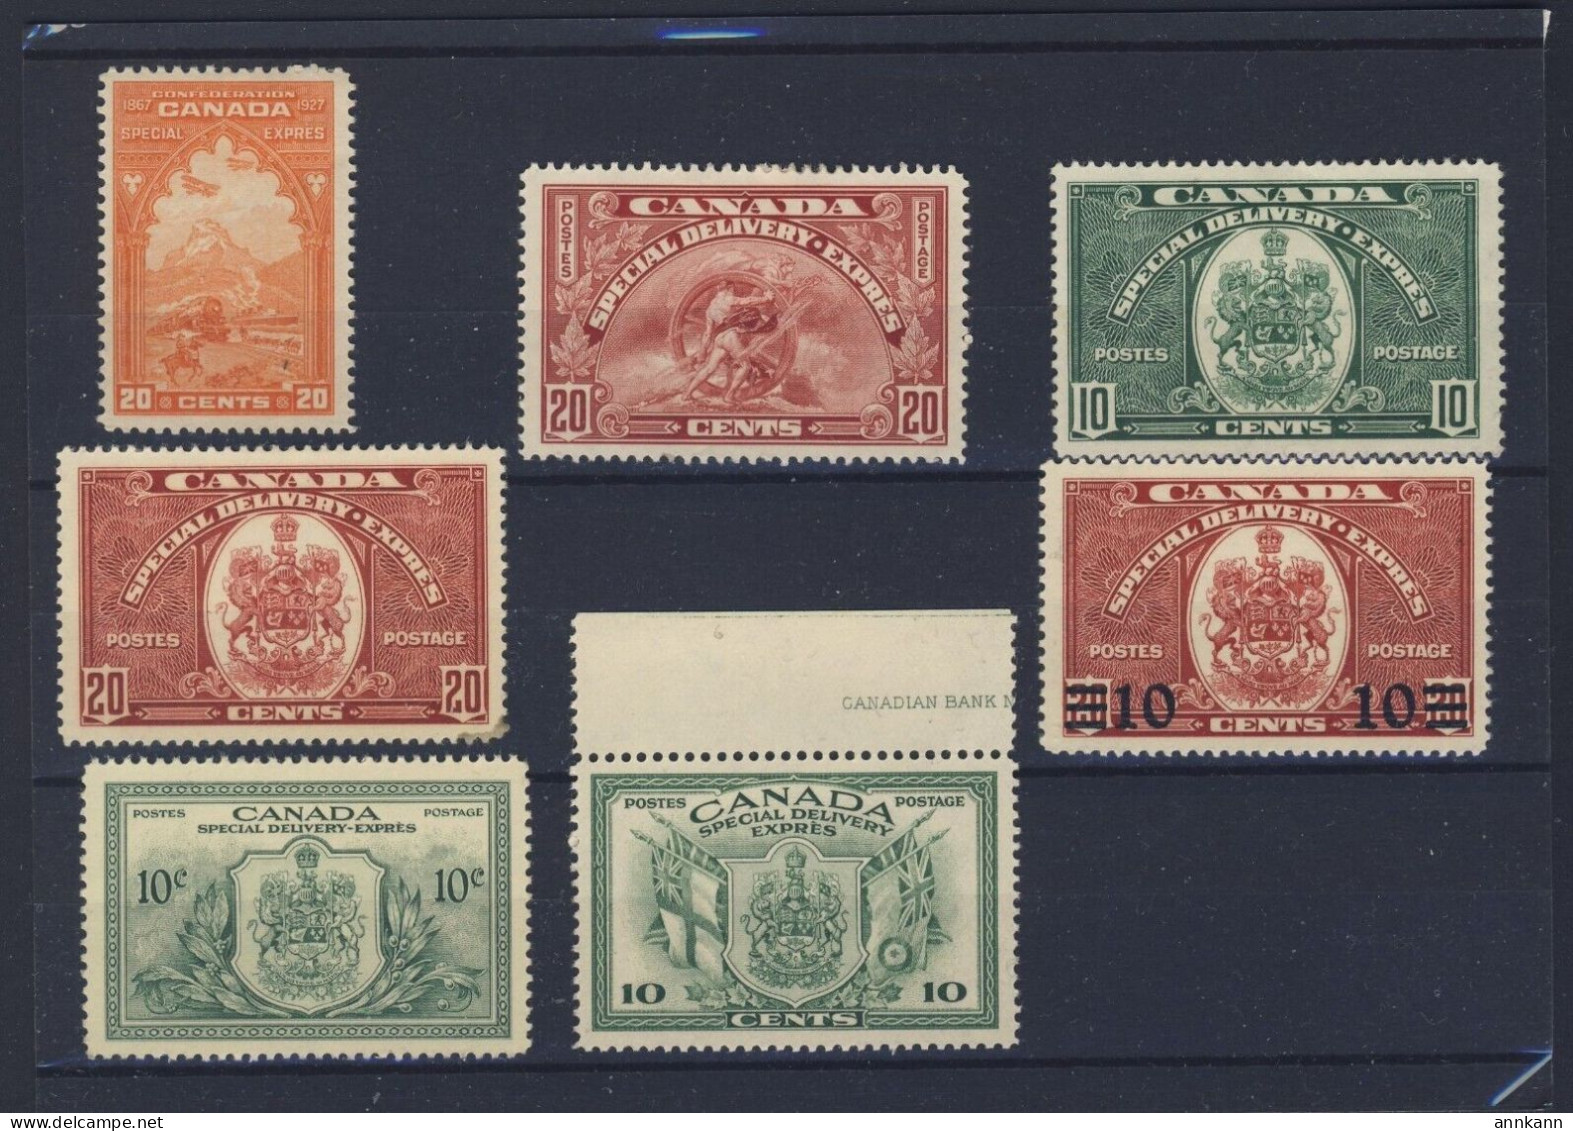 Canada S.D. 7x Stamp #E3-6-7-8-9-10-11 4x MH 3x MNH Guide Value= $154.00 - Correo Urgente